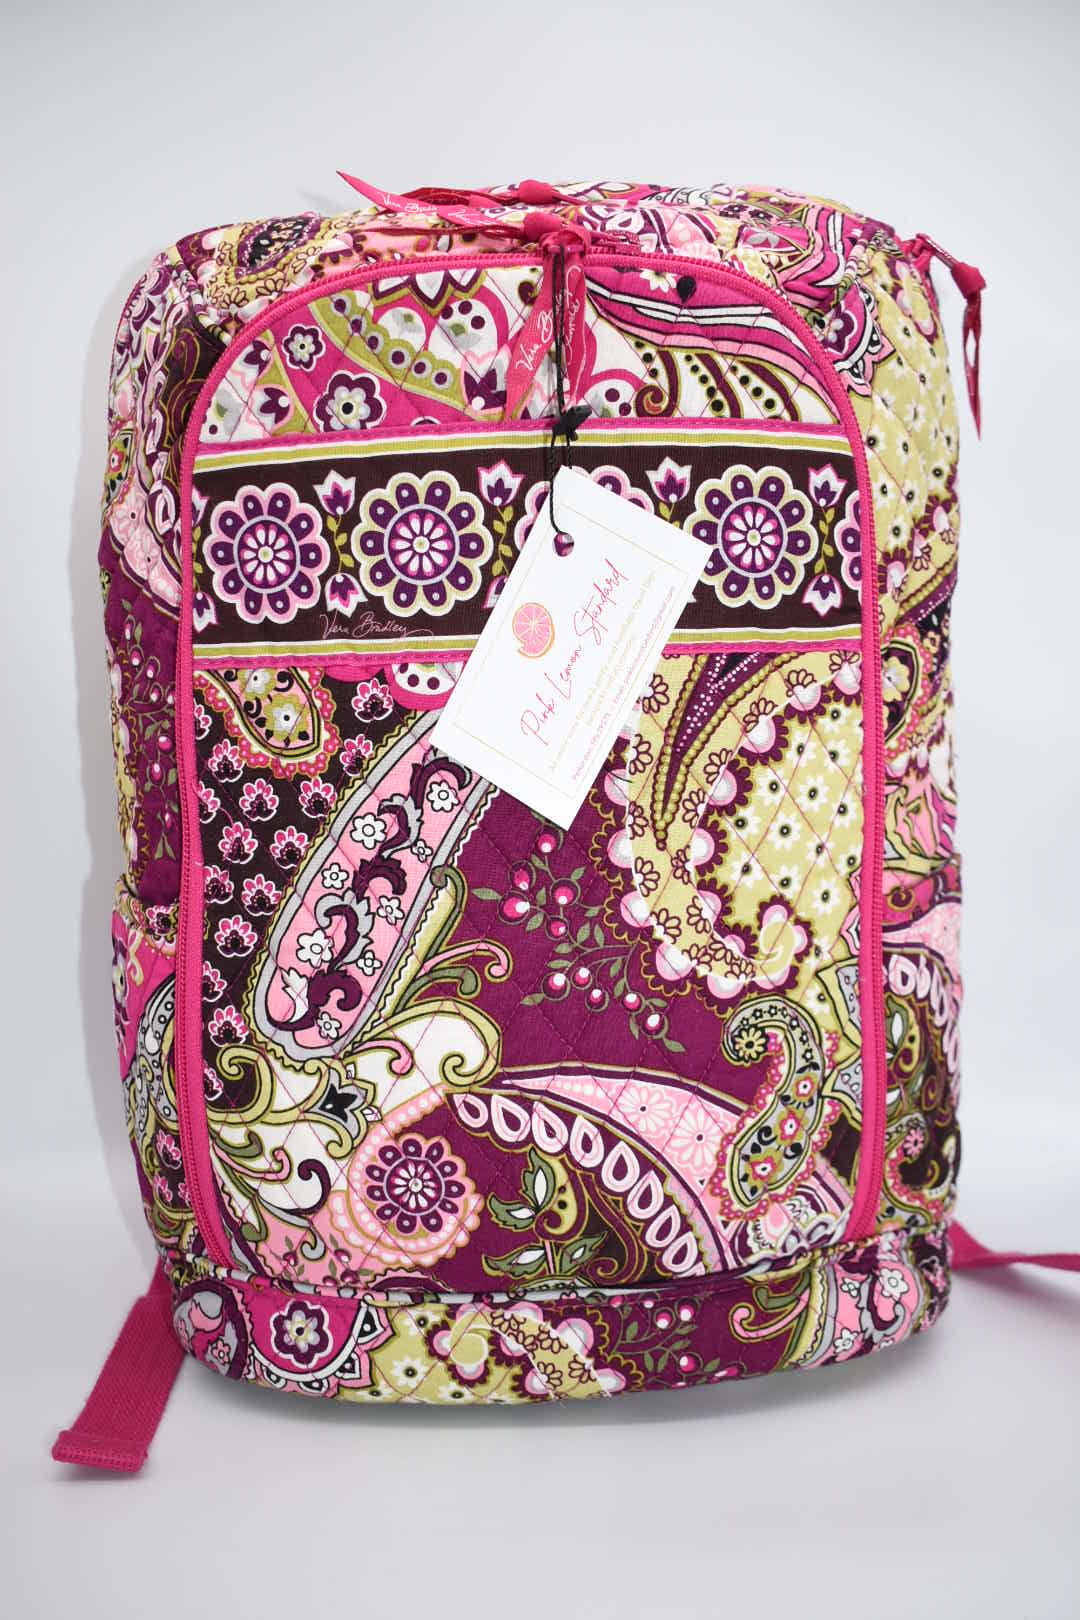 Vera Bradley Laptop Campus Backpack in Very Berry Paisley Pattern – Pink  Lemon Standard